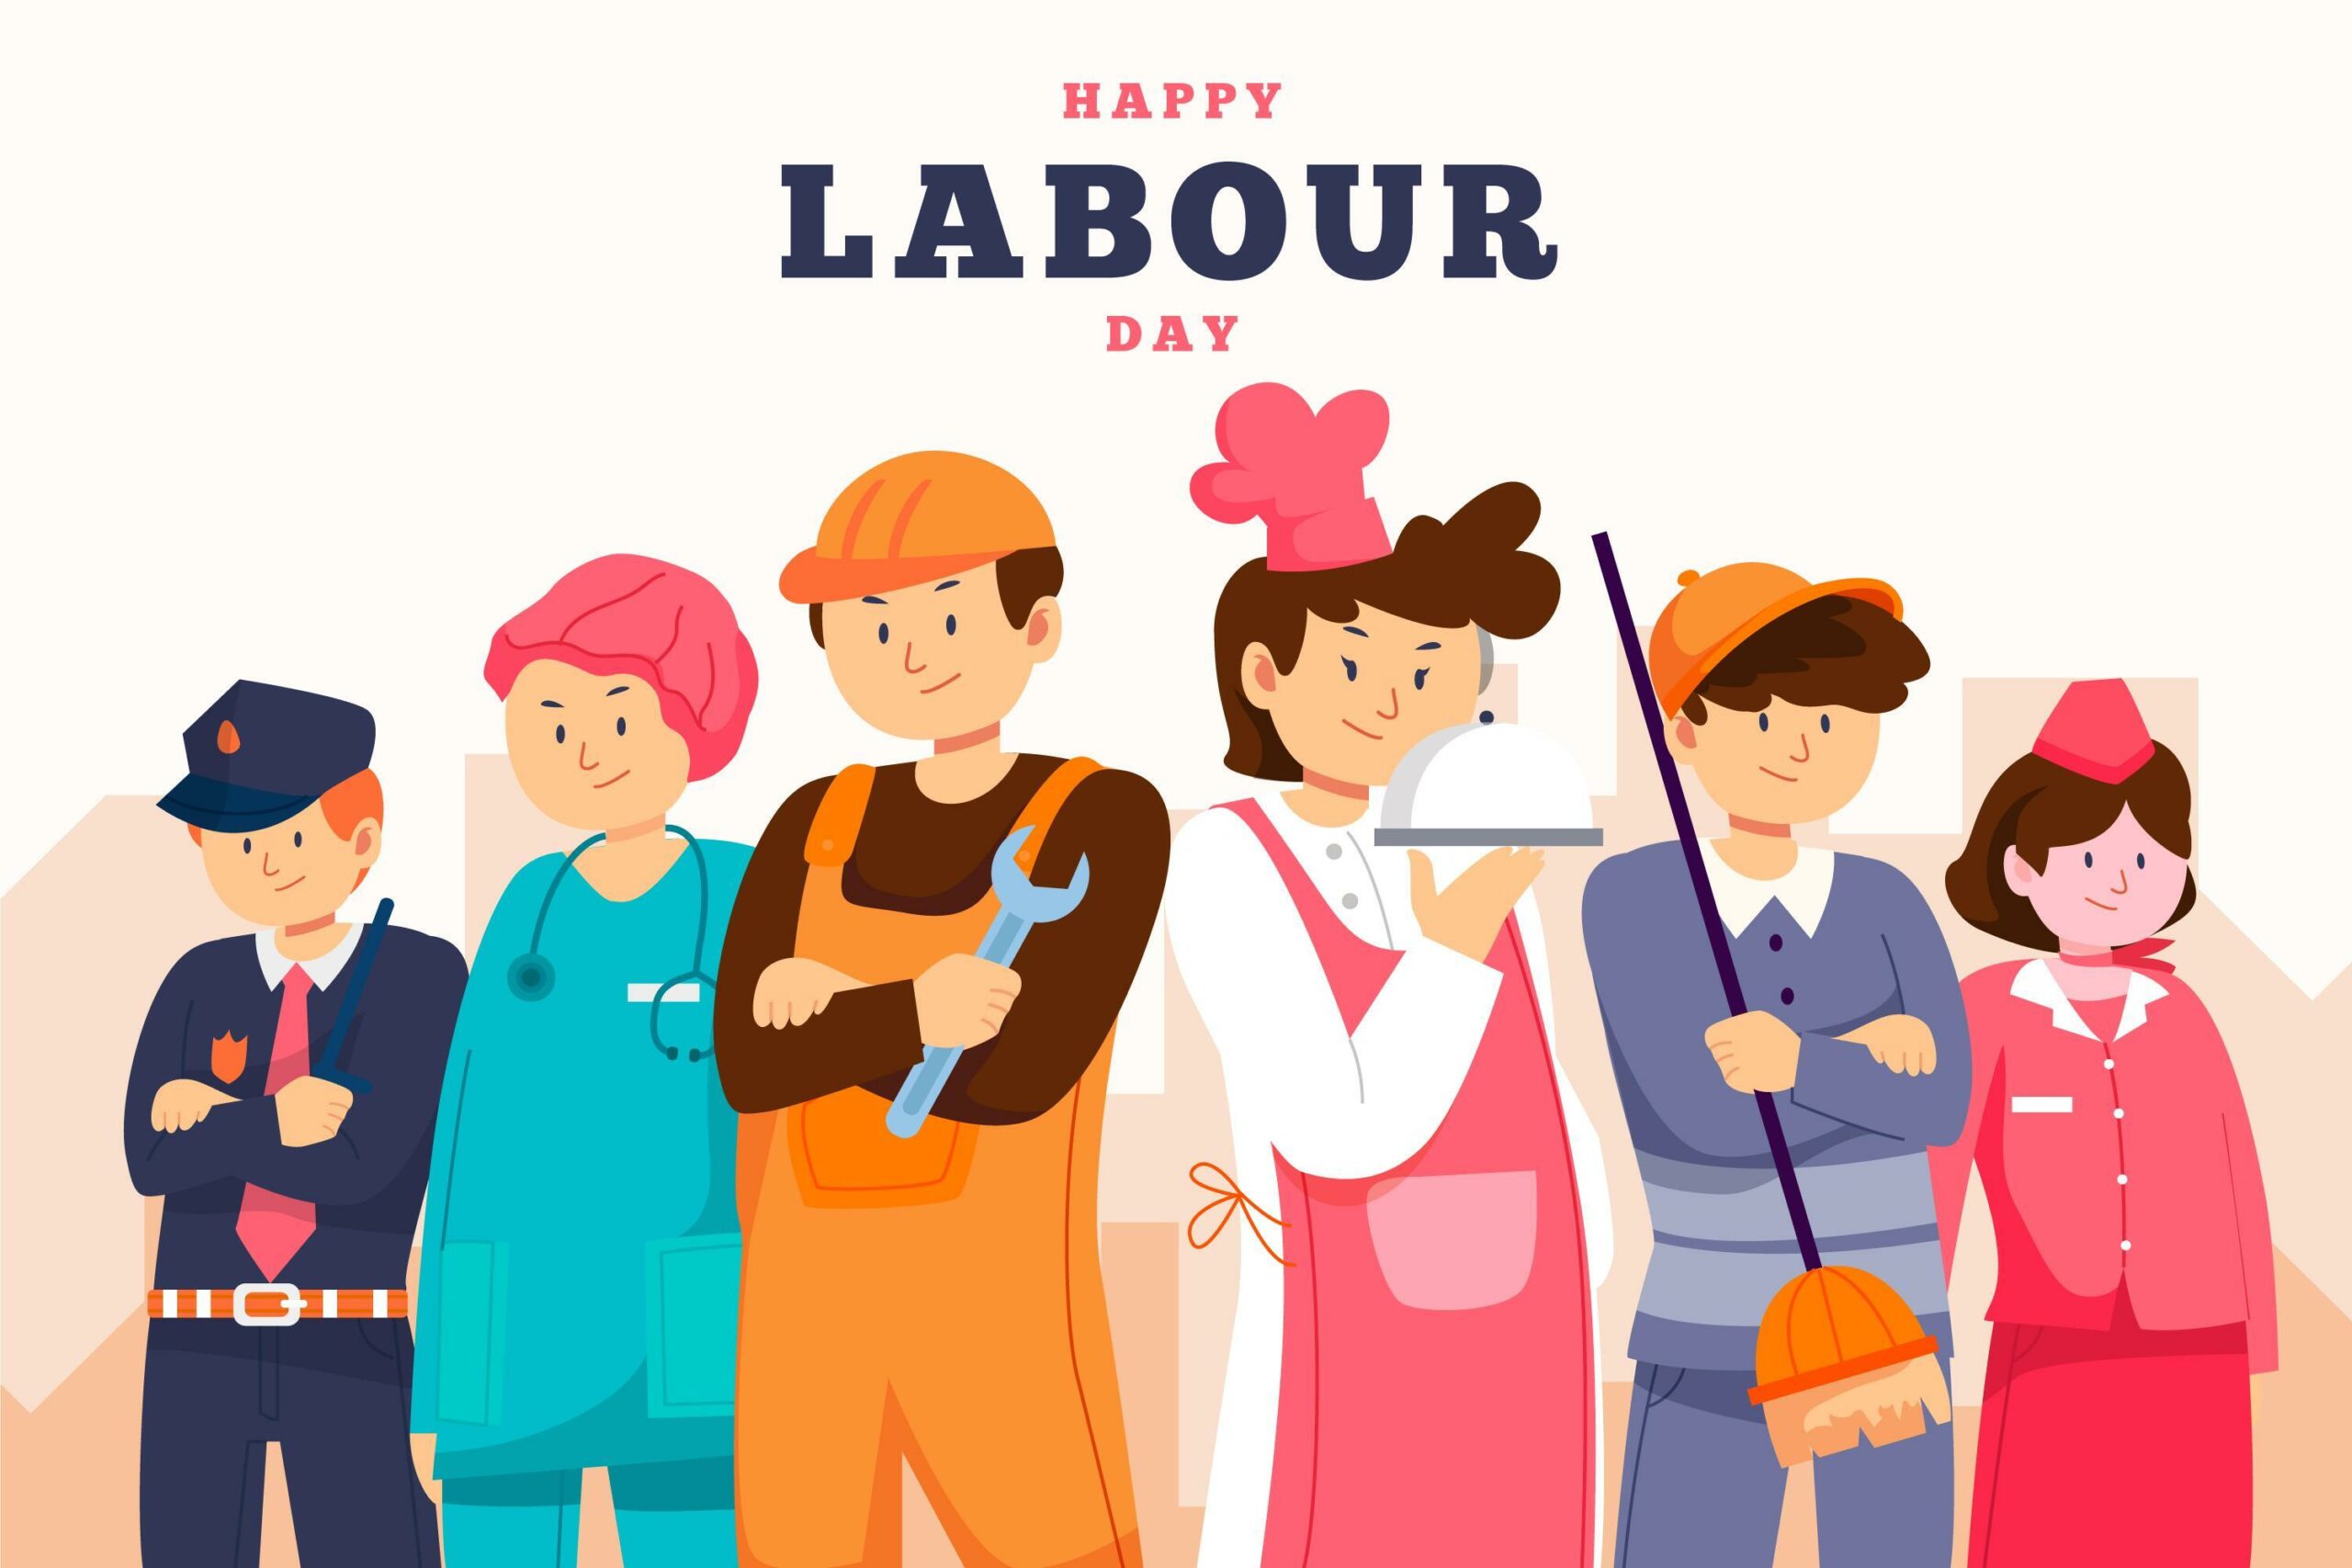 Happy Labor Day! Now Shenzhen